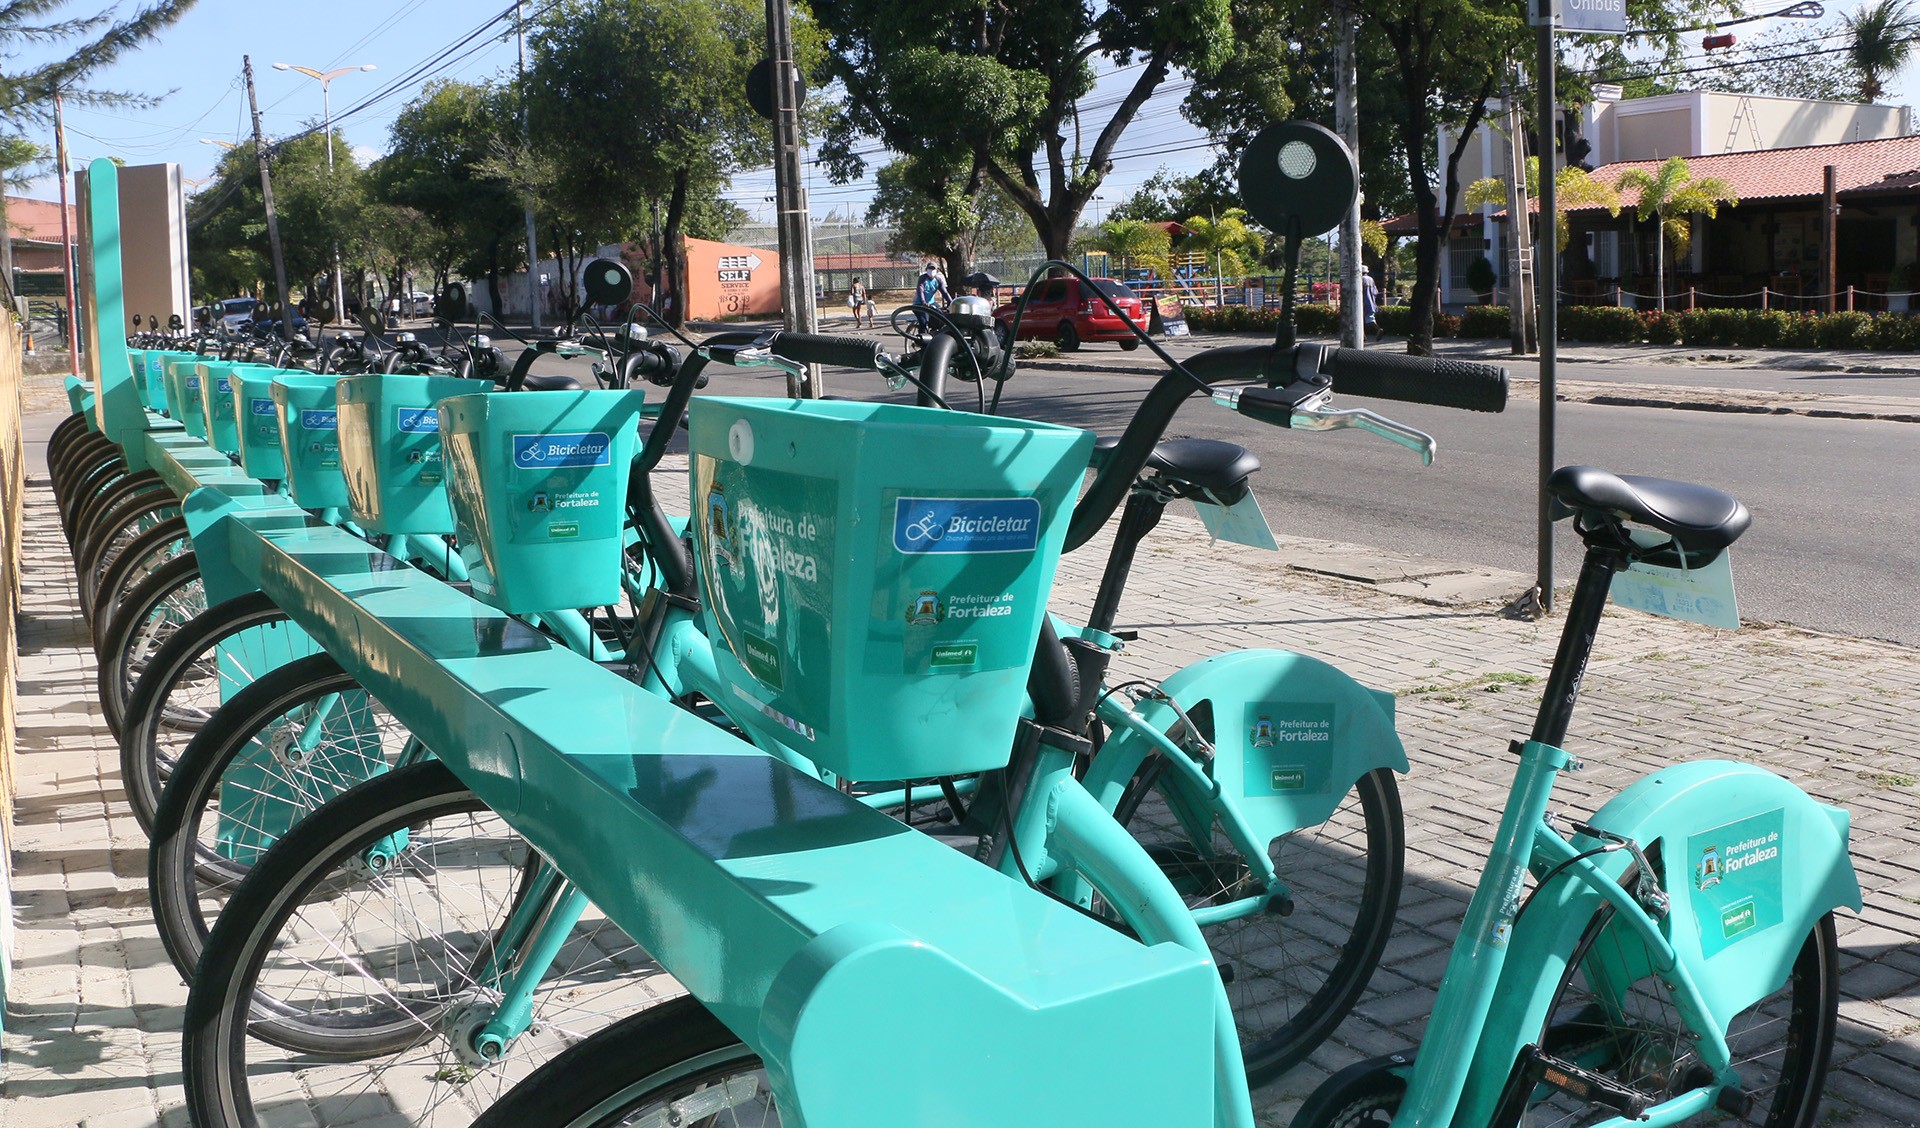 Fóruns Territoriais de Fortaleza - Fórun Territorial Cambeba, Parque Iracema e Messejana - Prefeitura de Fortaleza inicia operação de oito novas estações do Bicicletar nas Regionais VI e IV